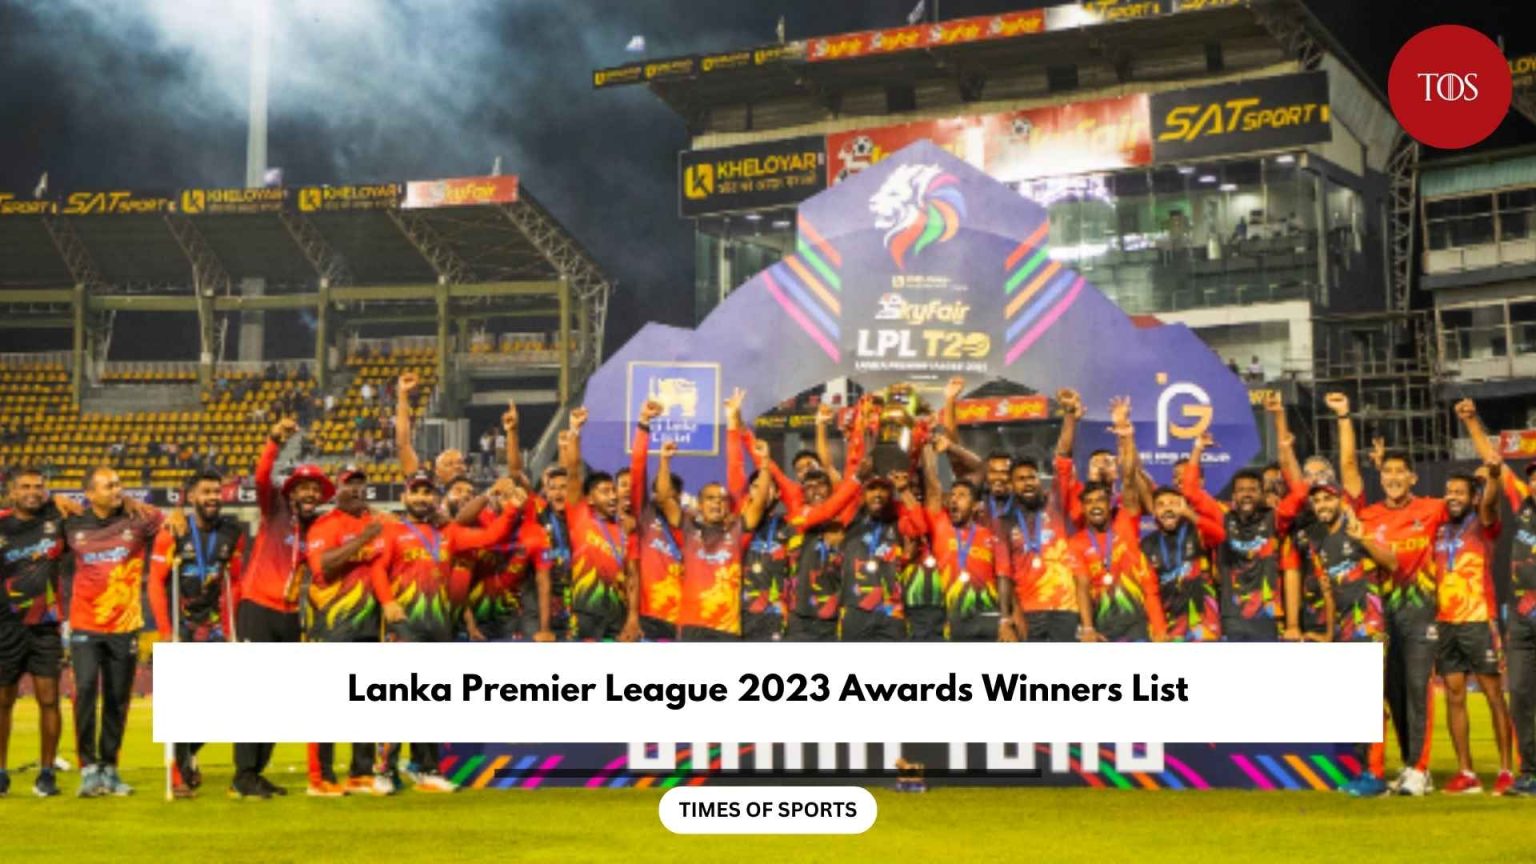 LPL 2023 Awards Winners List Lanka Premier League